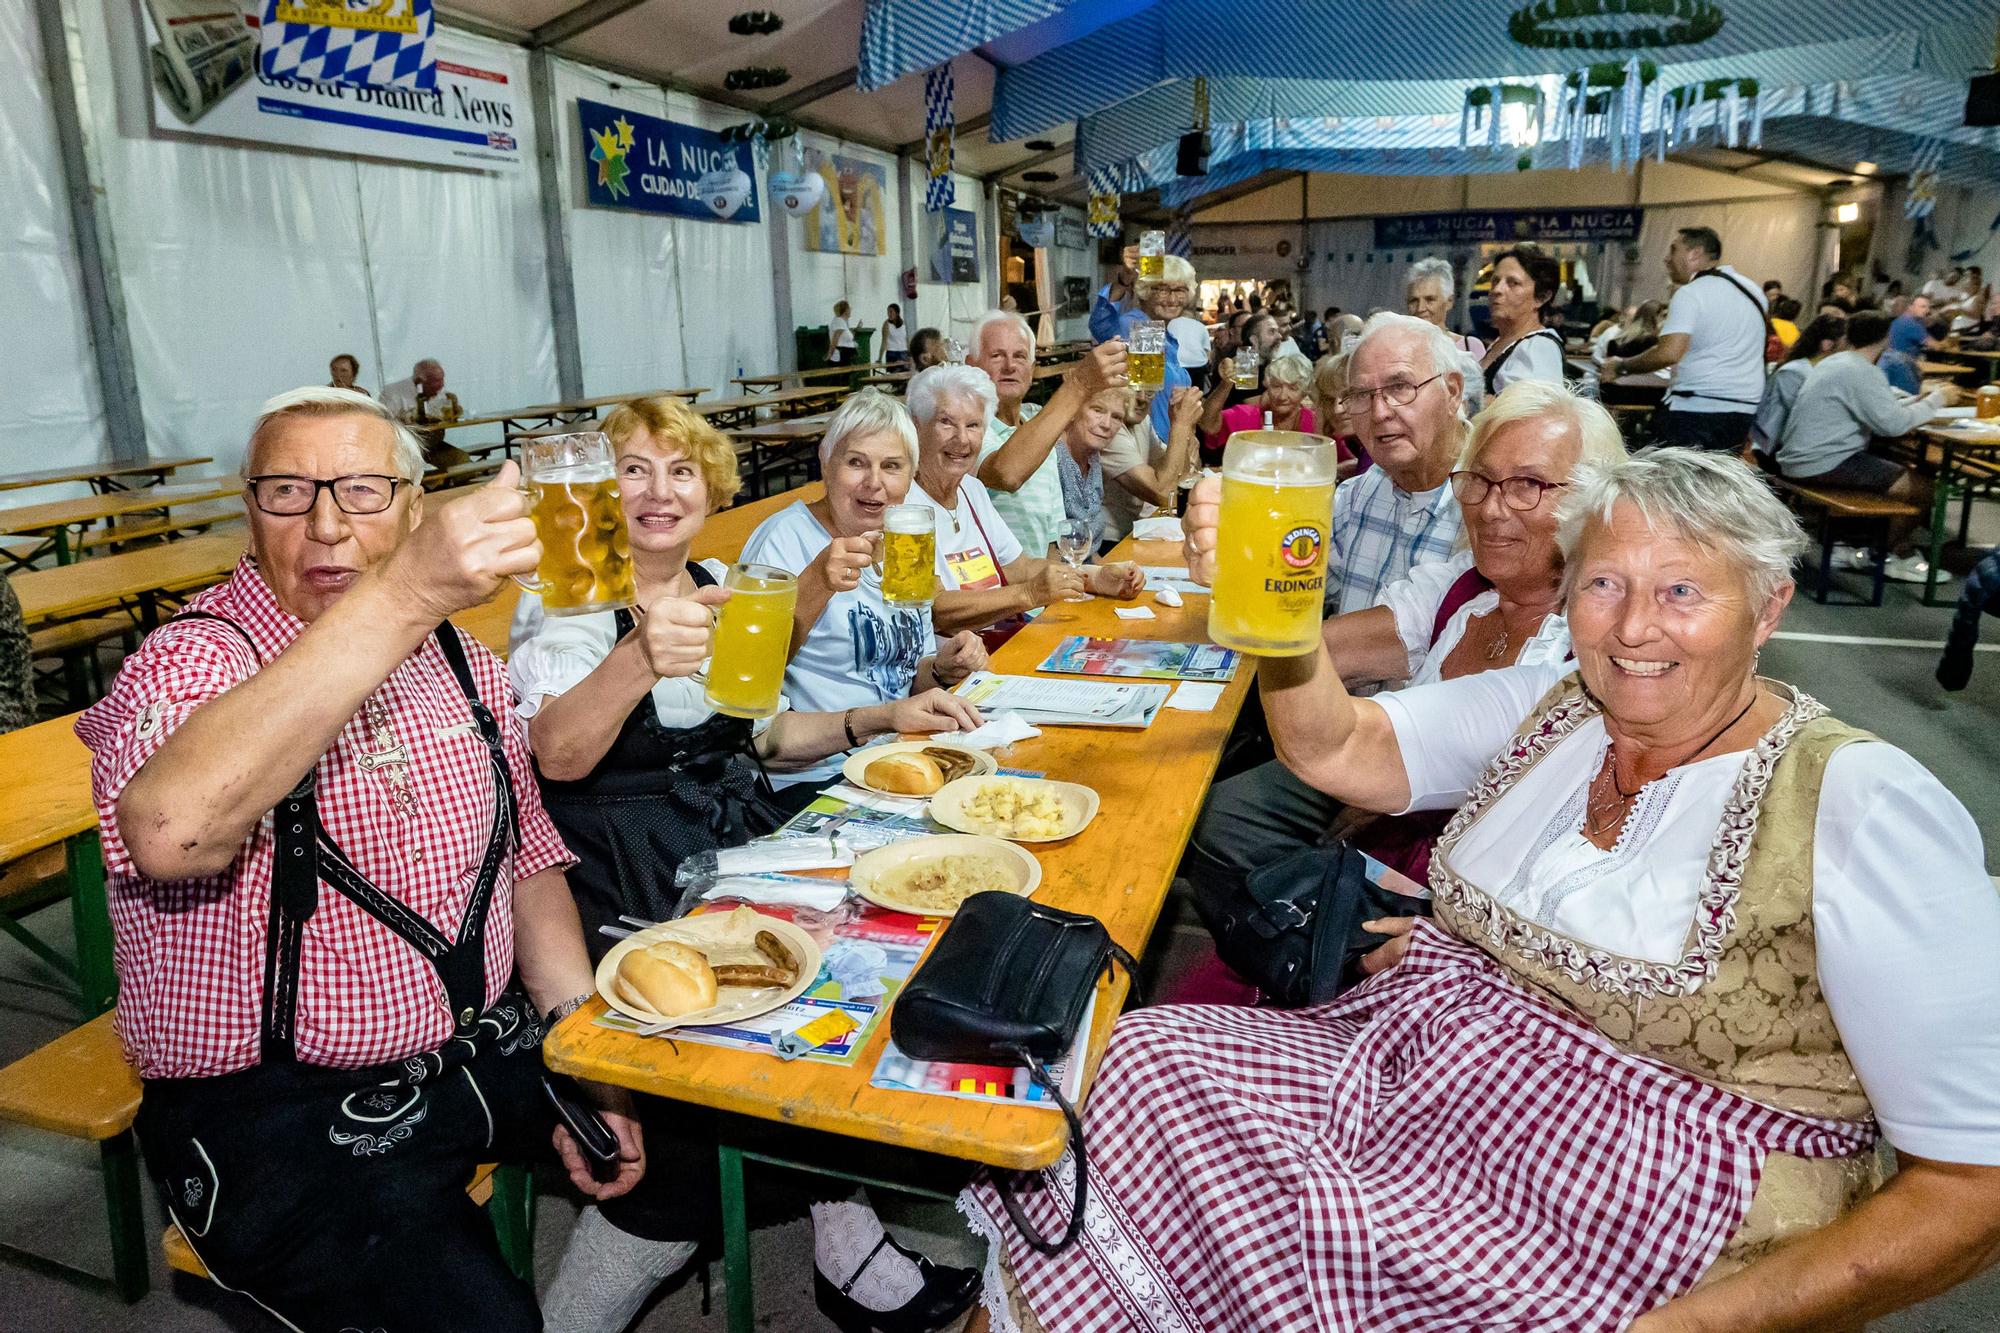 La “apertura del barril” marca el inicio de la Oktoberfest. La “Fiesta de la Cerveza” se desarrollará hasta el 16 de octubre